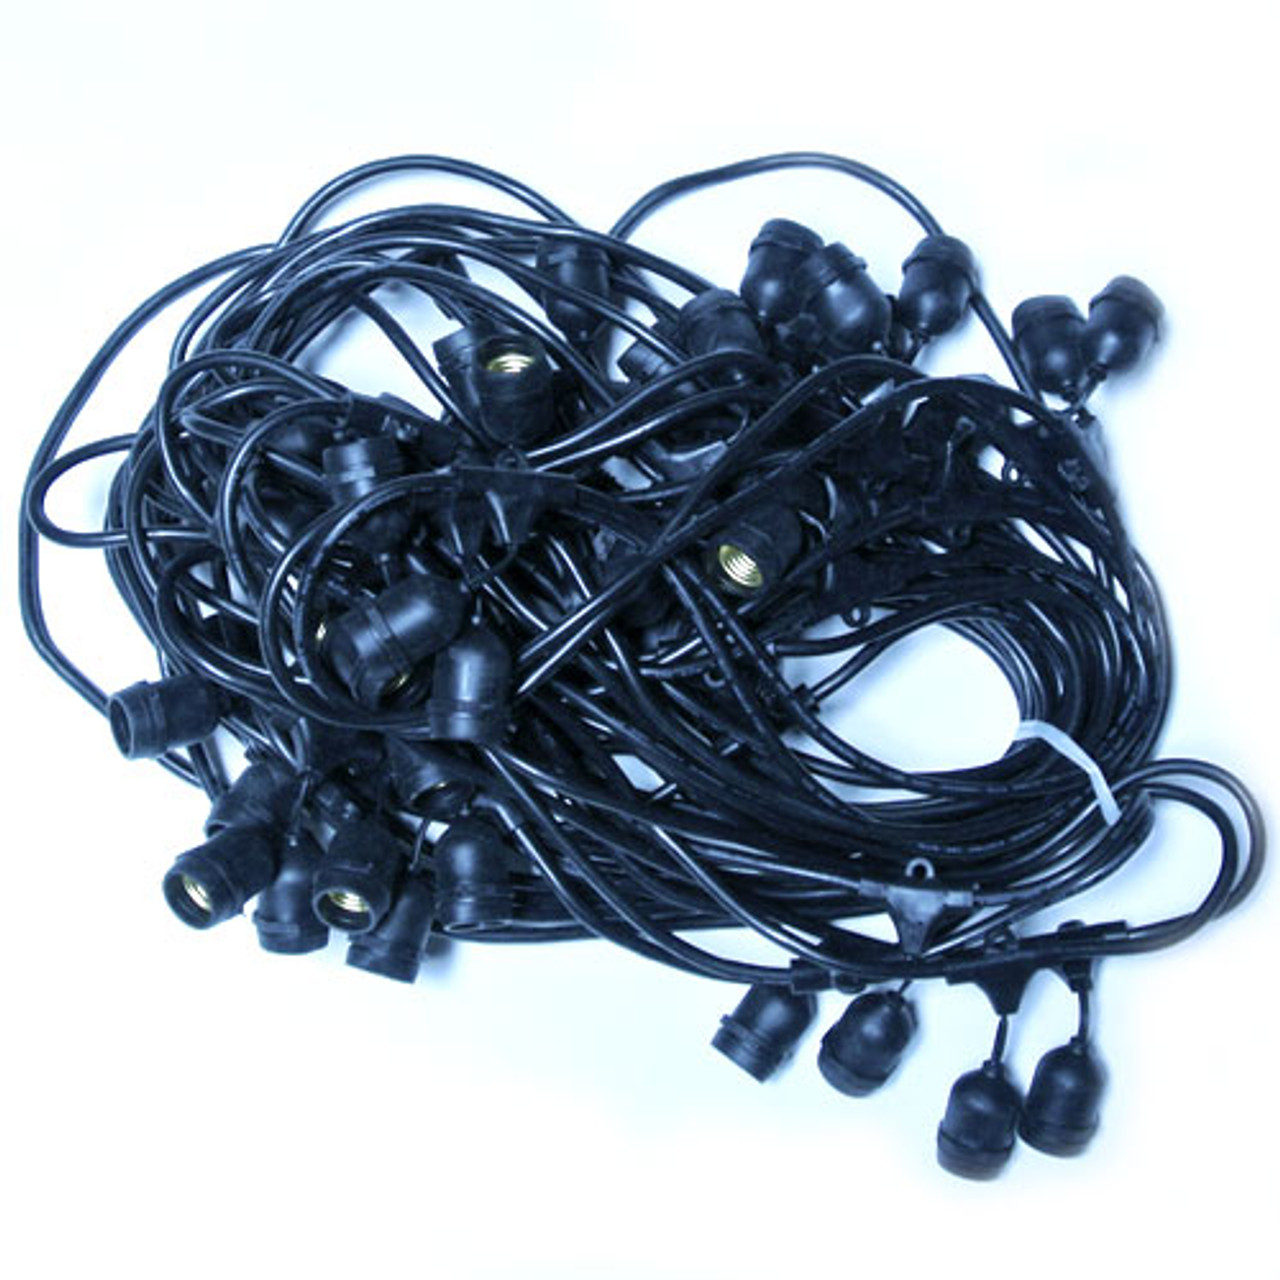 LED Outdoor Suspended Socket String Lights, 100' Black & LED G50